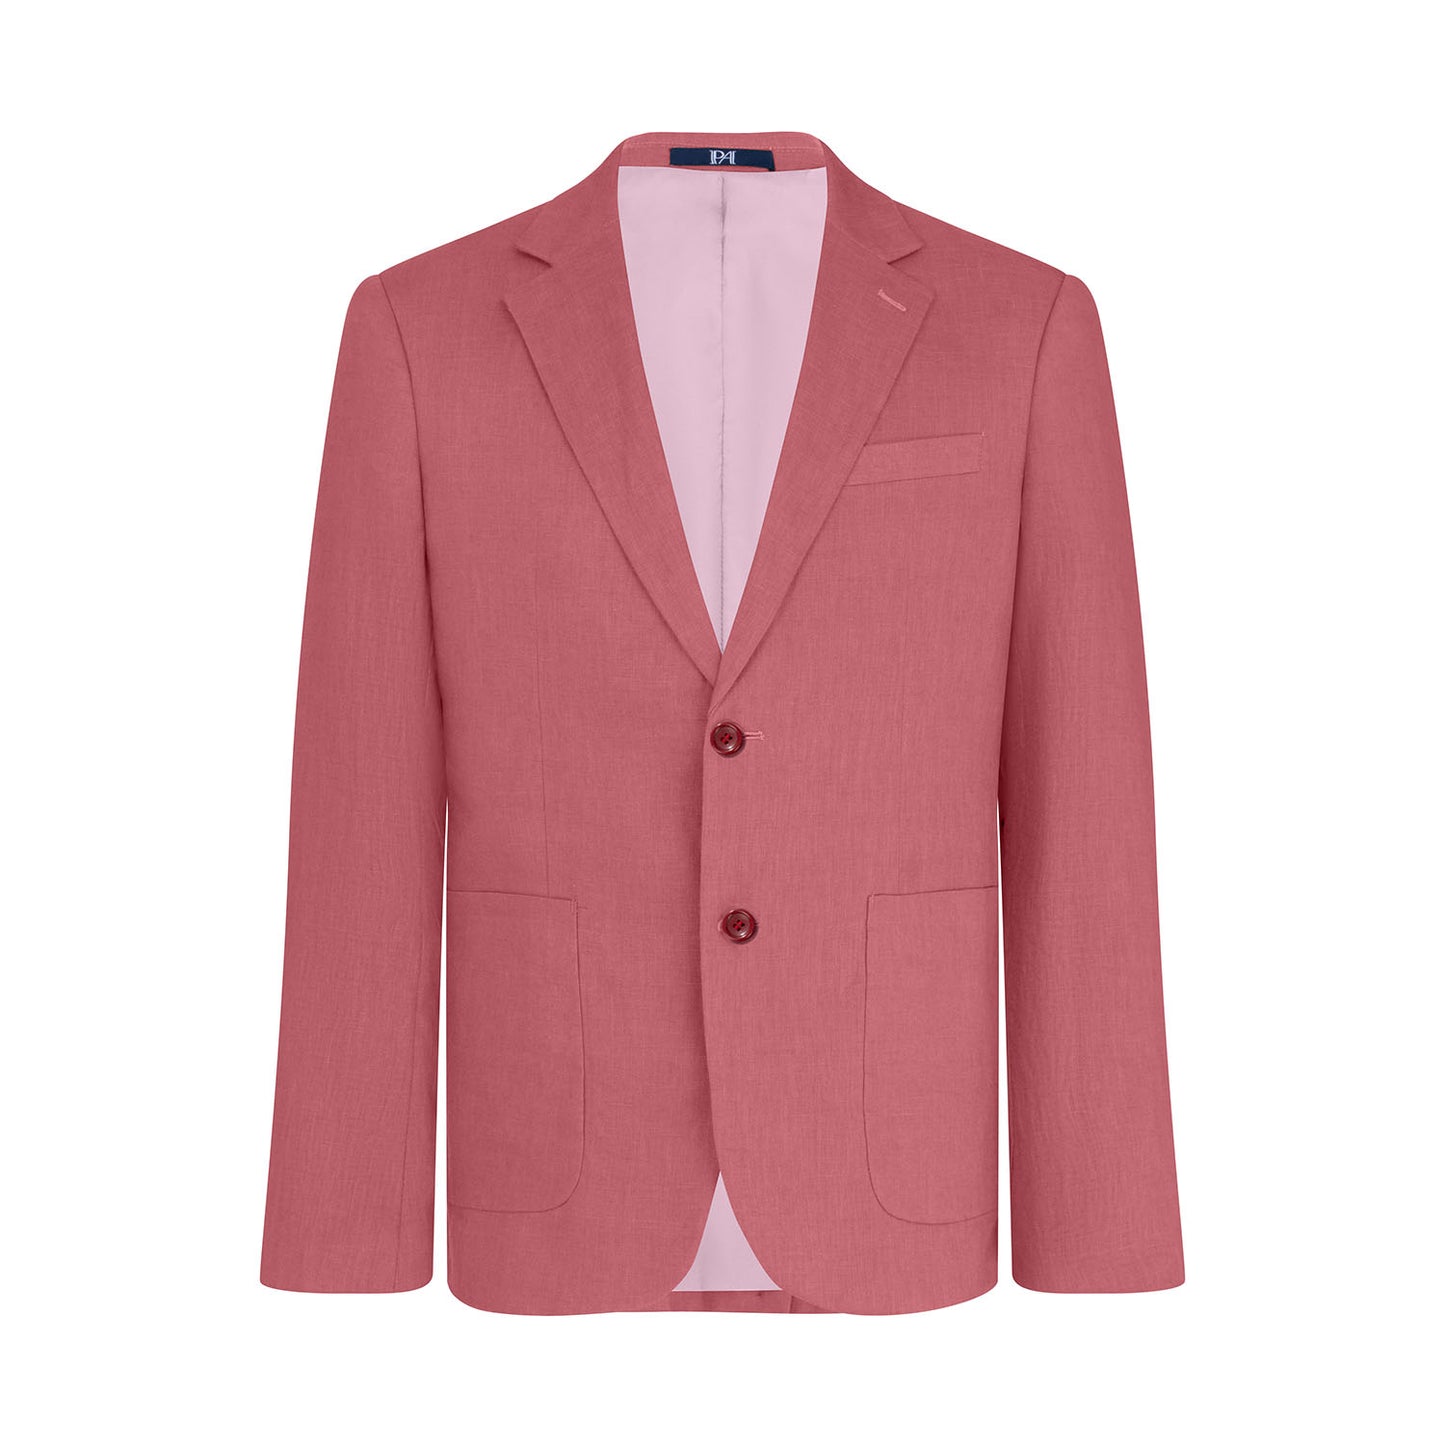 【Special Sale】1PA1 Men's 100% Linen Slim Fit Suit Jacket